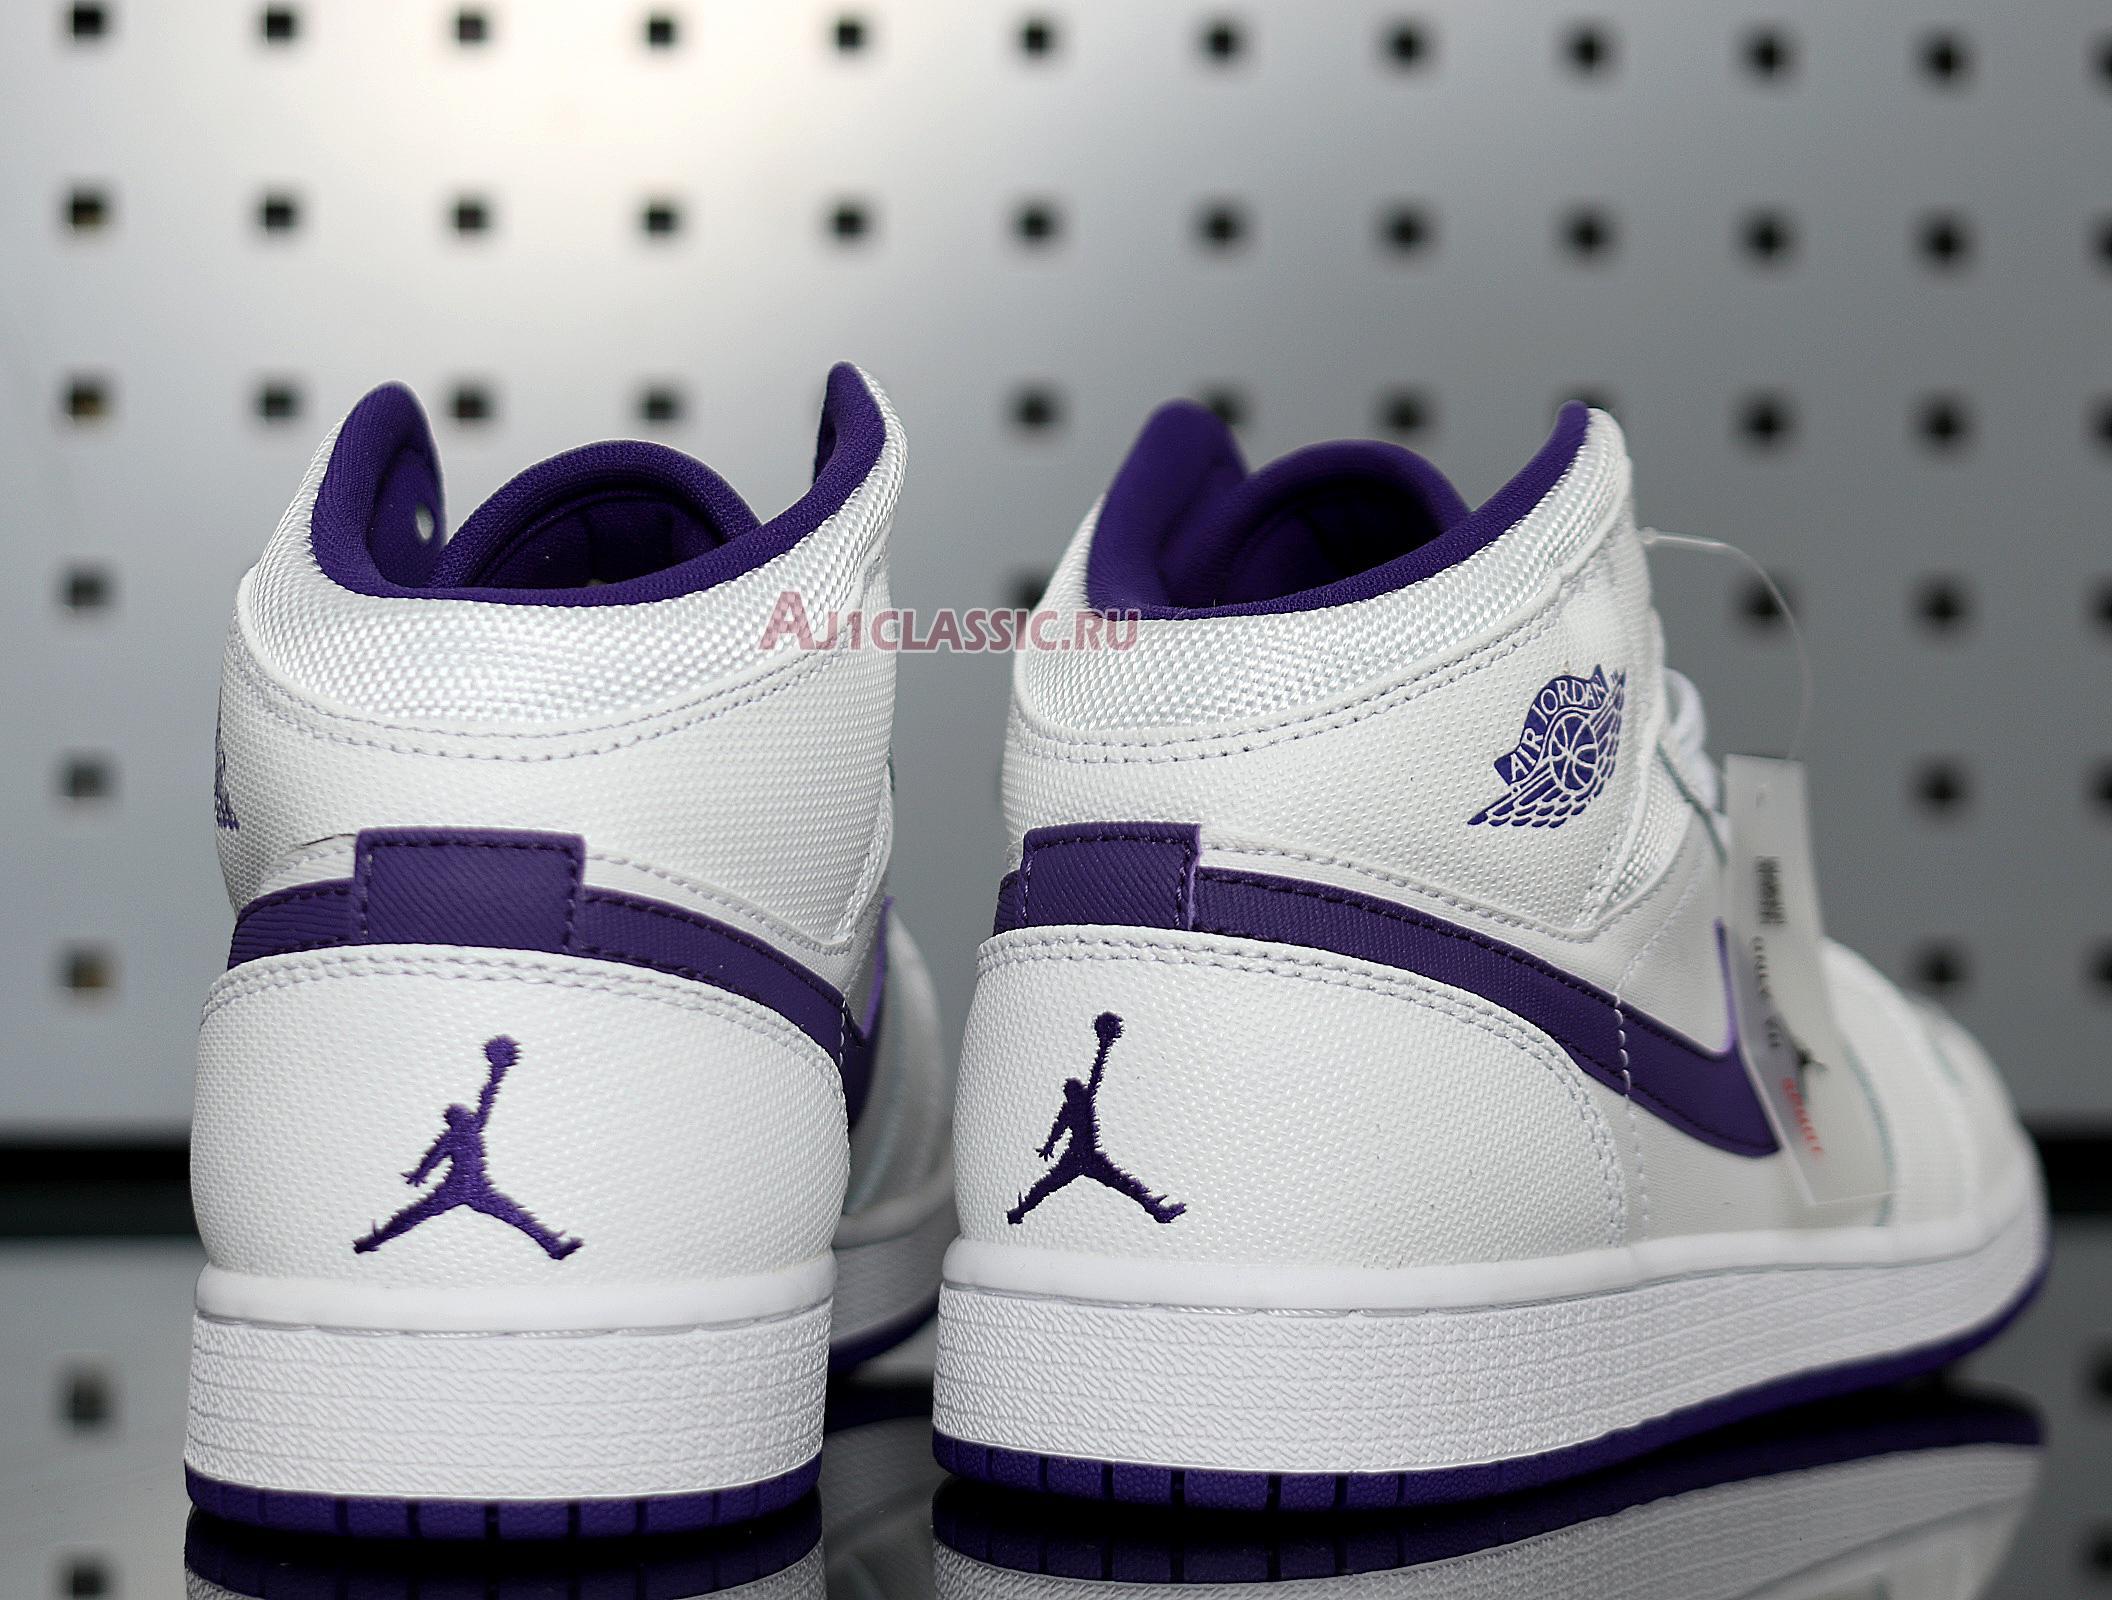 Air Jordan 1 Retro High "White Court Purple" 332148-137